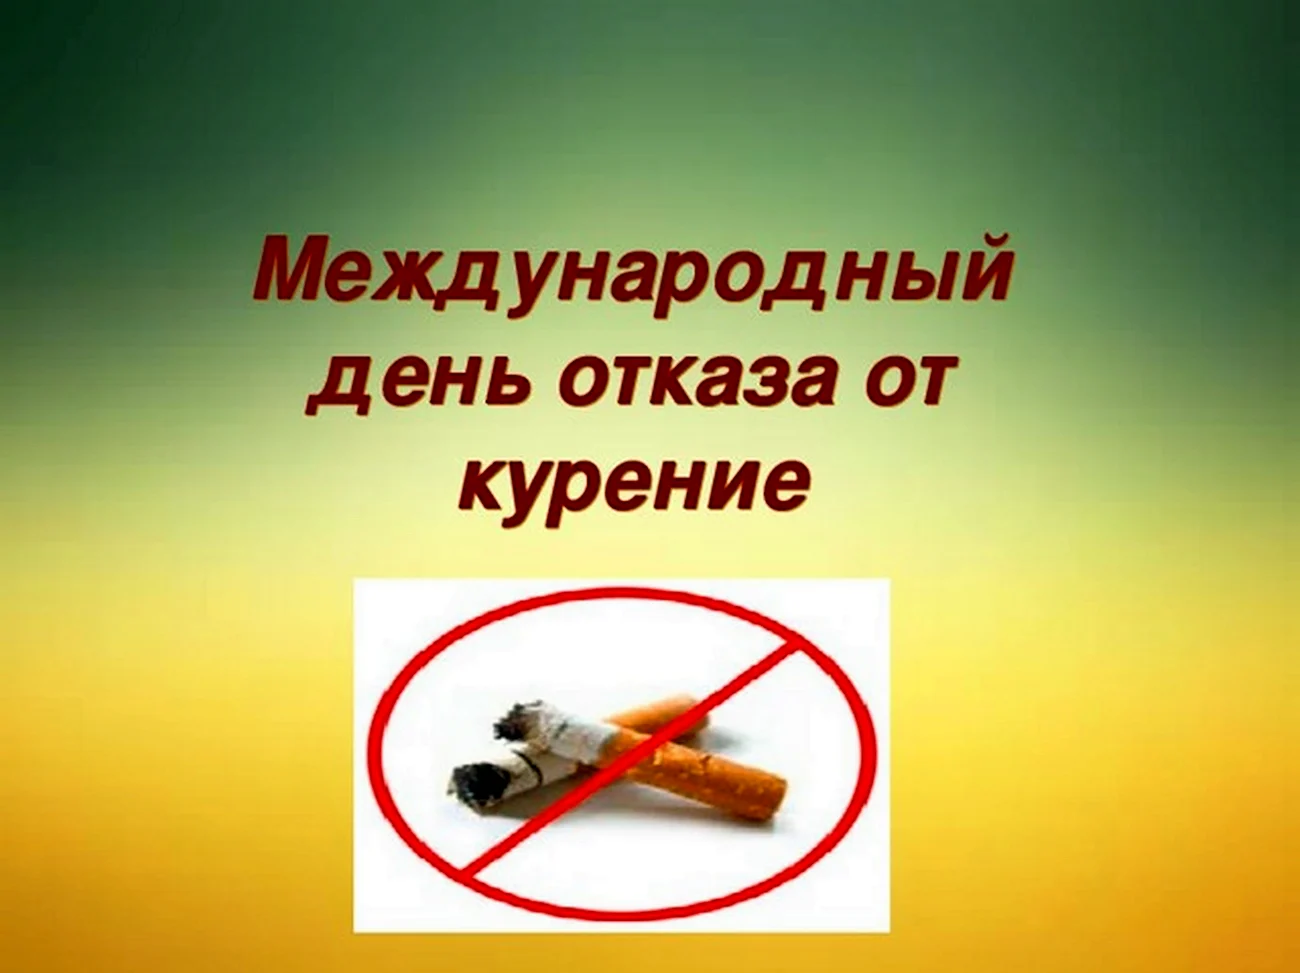 Международный день отказа от курения. Поздравление